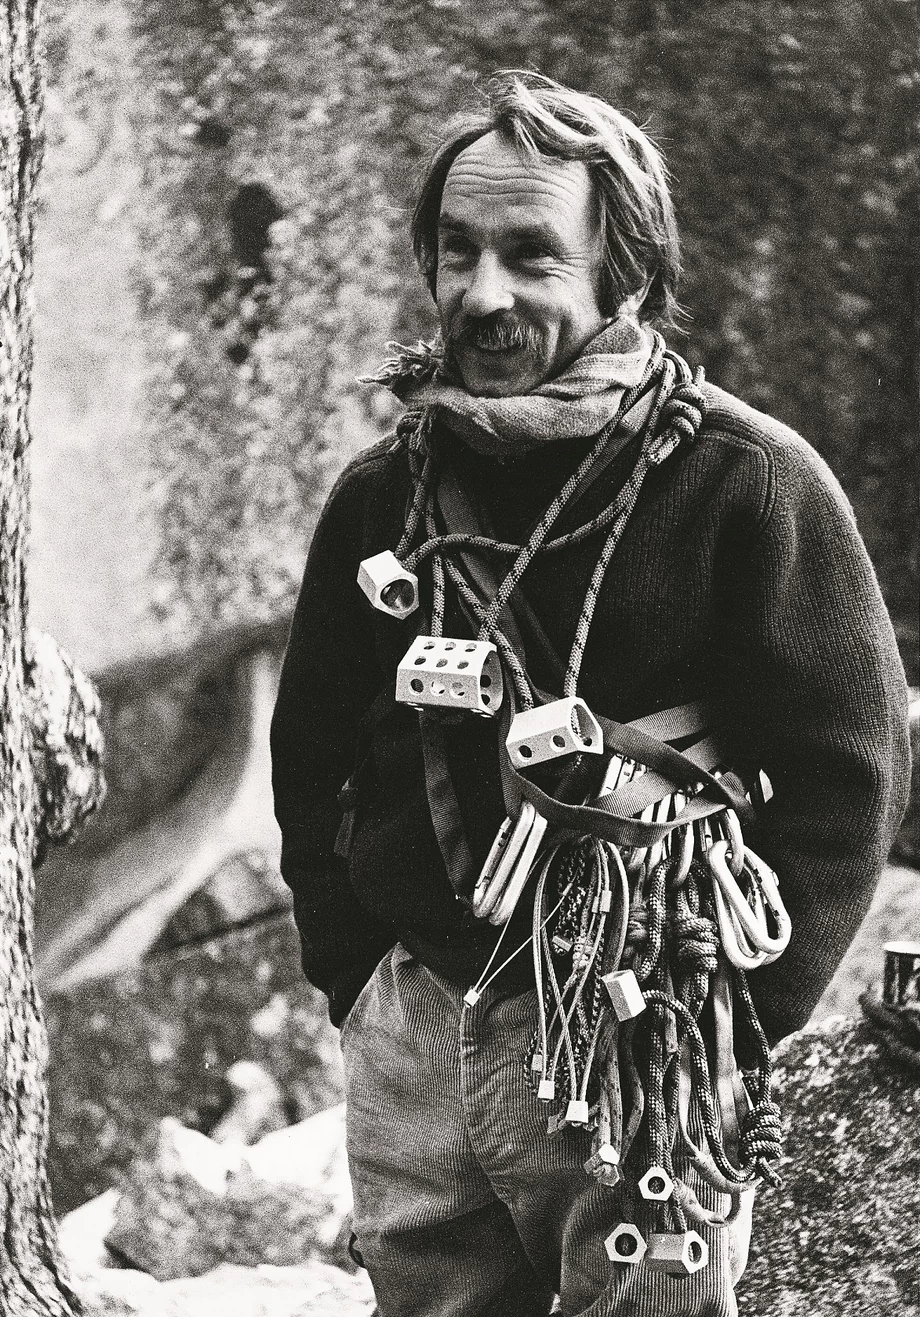 Po podróży do Patagonii w 1968 roku Chouinard zaprojektował specjalne haki, których nie trzeba wbijać w skałę 